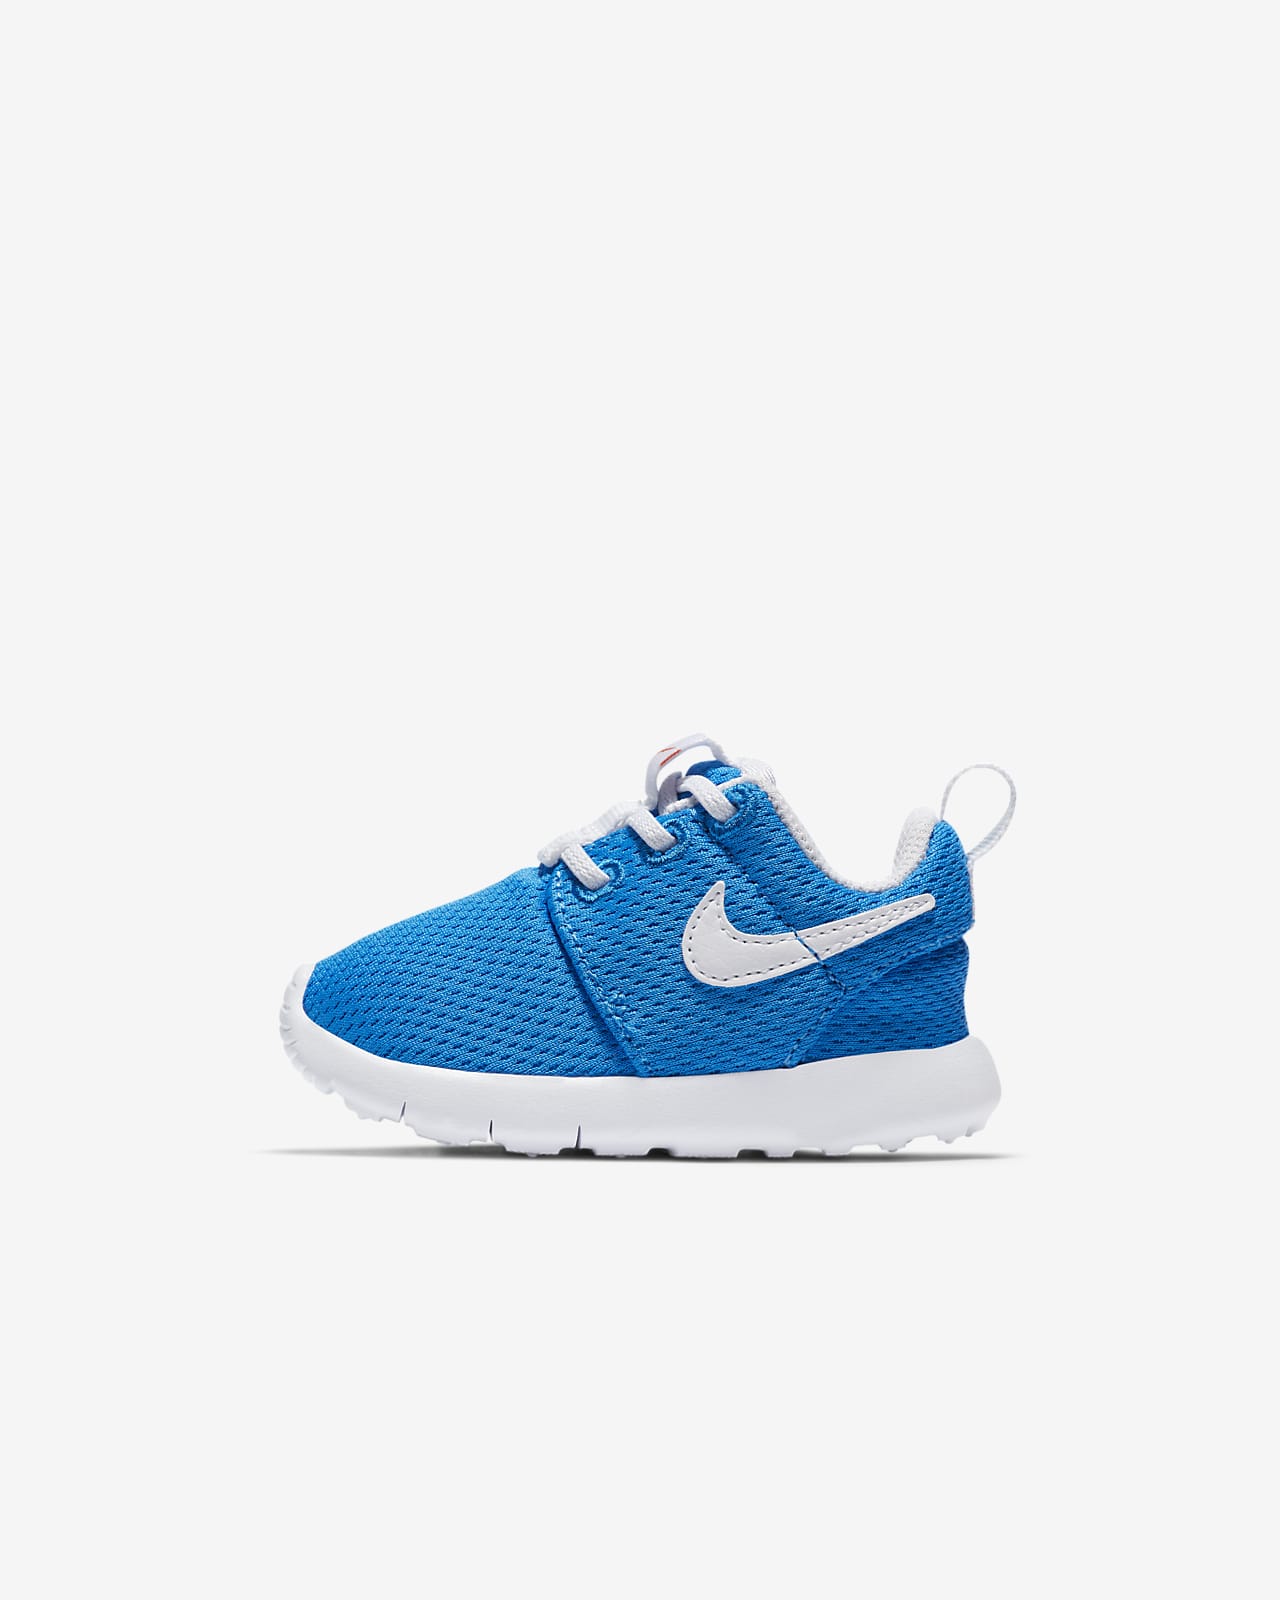 Nike Roshe One Infant/Toddler Shoe 